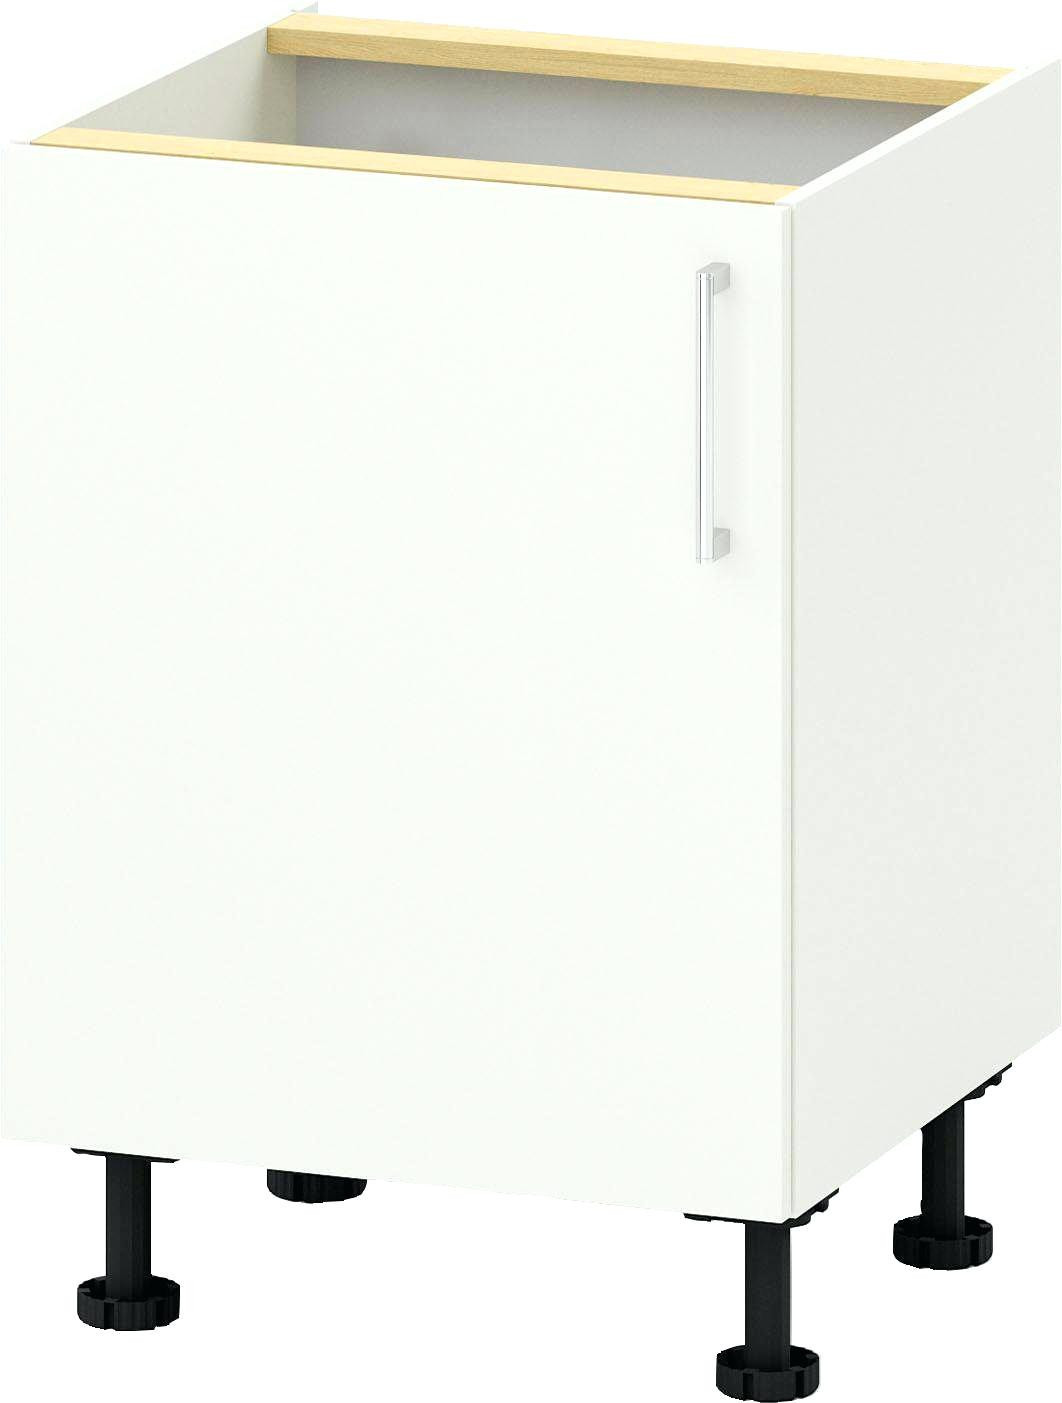 Waschtischunterschrank Stehend
 Waschtischunterschrank Stehend Ikea – avaformalwear